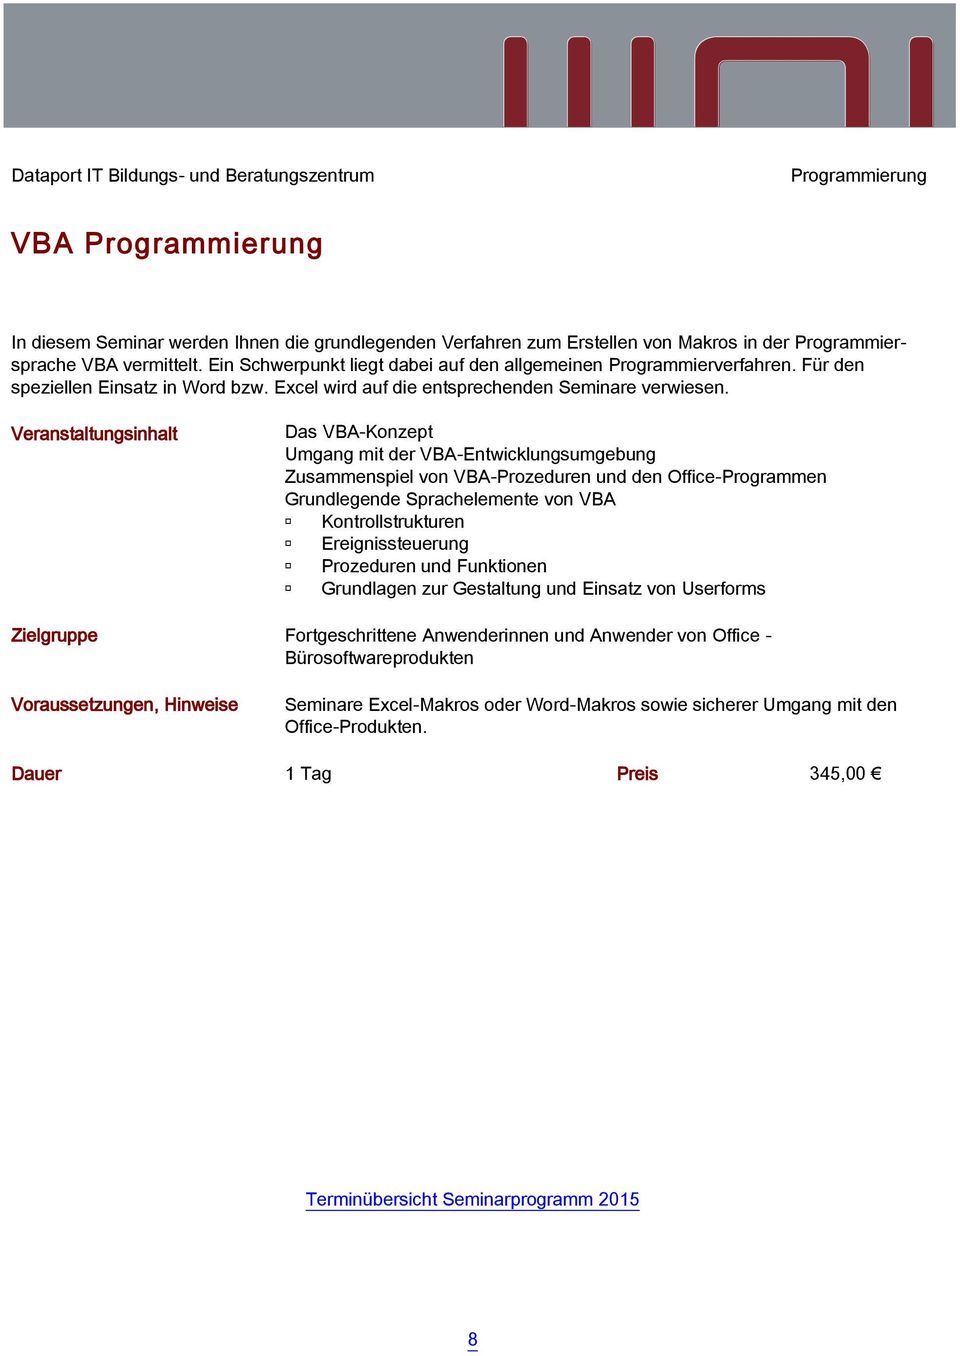 Das VBA-Konzept Umgang mit der VBA-Entwicklungsumgebung Zusammenspiel von VBA-Prozeduren und den Office-Programmen Grundlegende Sprachelemente von VBA Kontrollstrukturen Ereignissteuerung